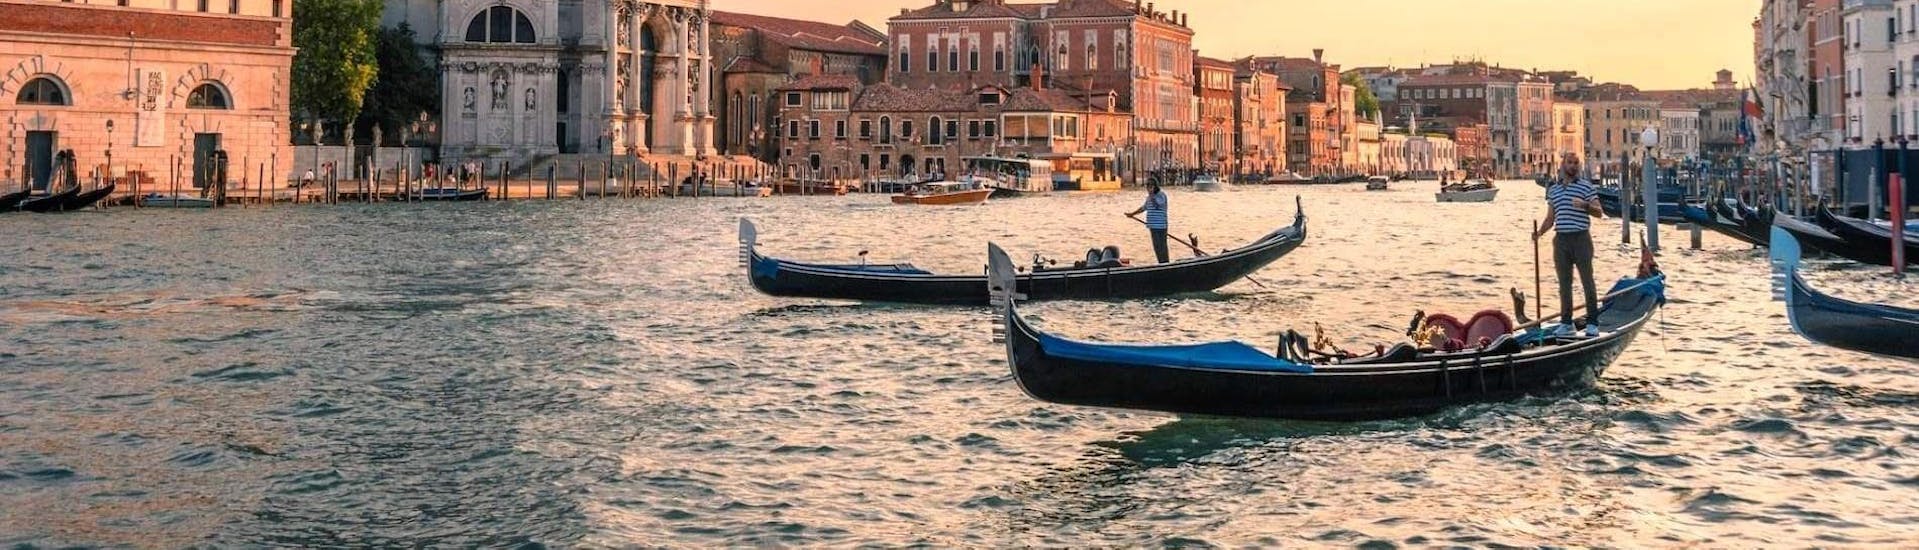 La meravigliosa vista del Canal Grande che potrete godervi durante il Giro in gondola nei canali nascosti di Venezia con Avventure Bellissime Venezia.